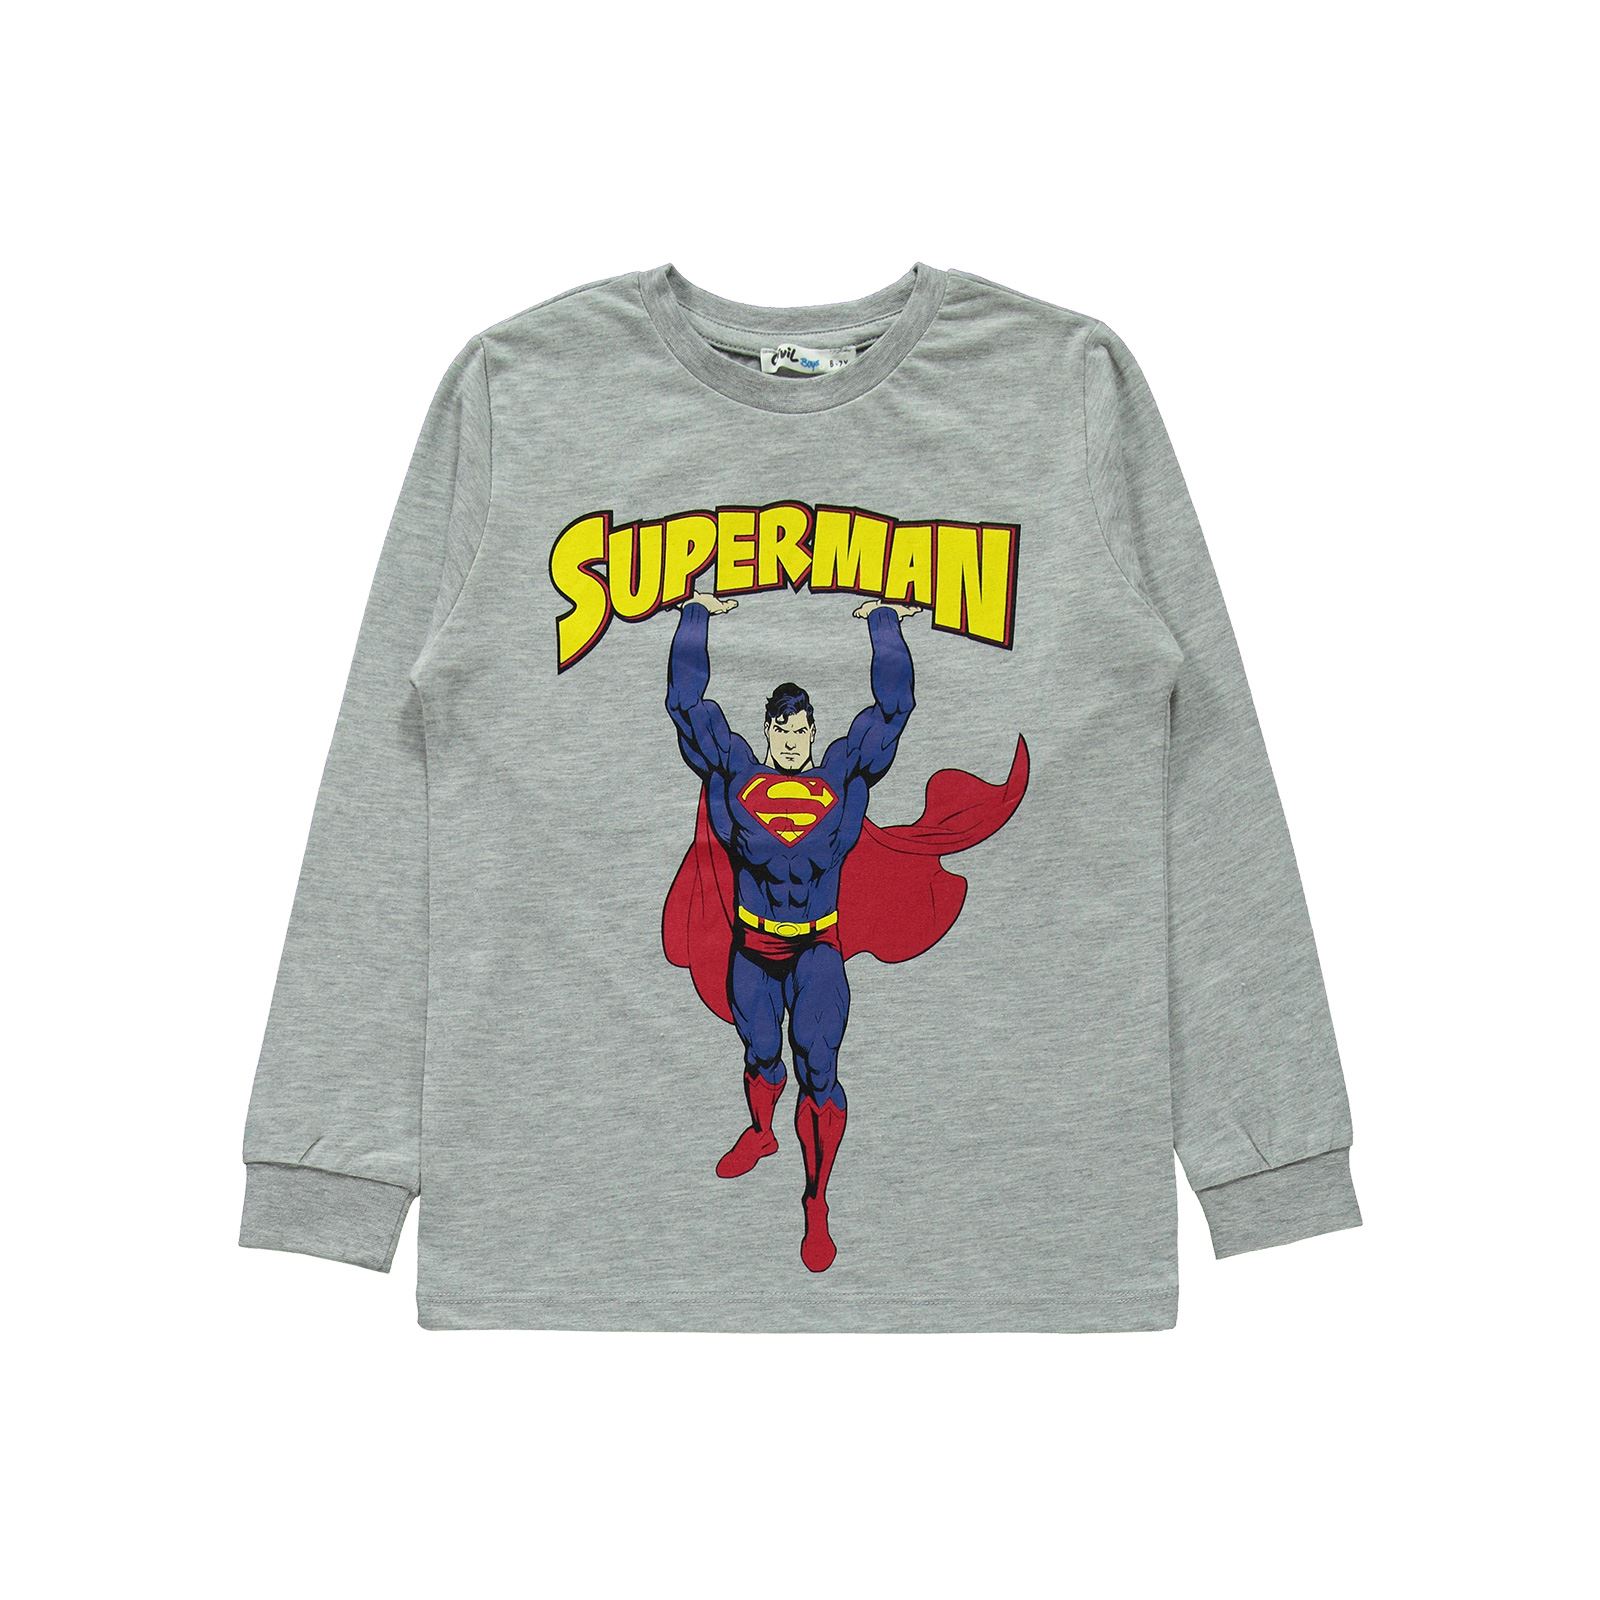 Süperman Erkek Çocuk Pijama Takımı 10-13 Yaş Grimelanj